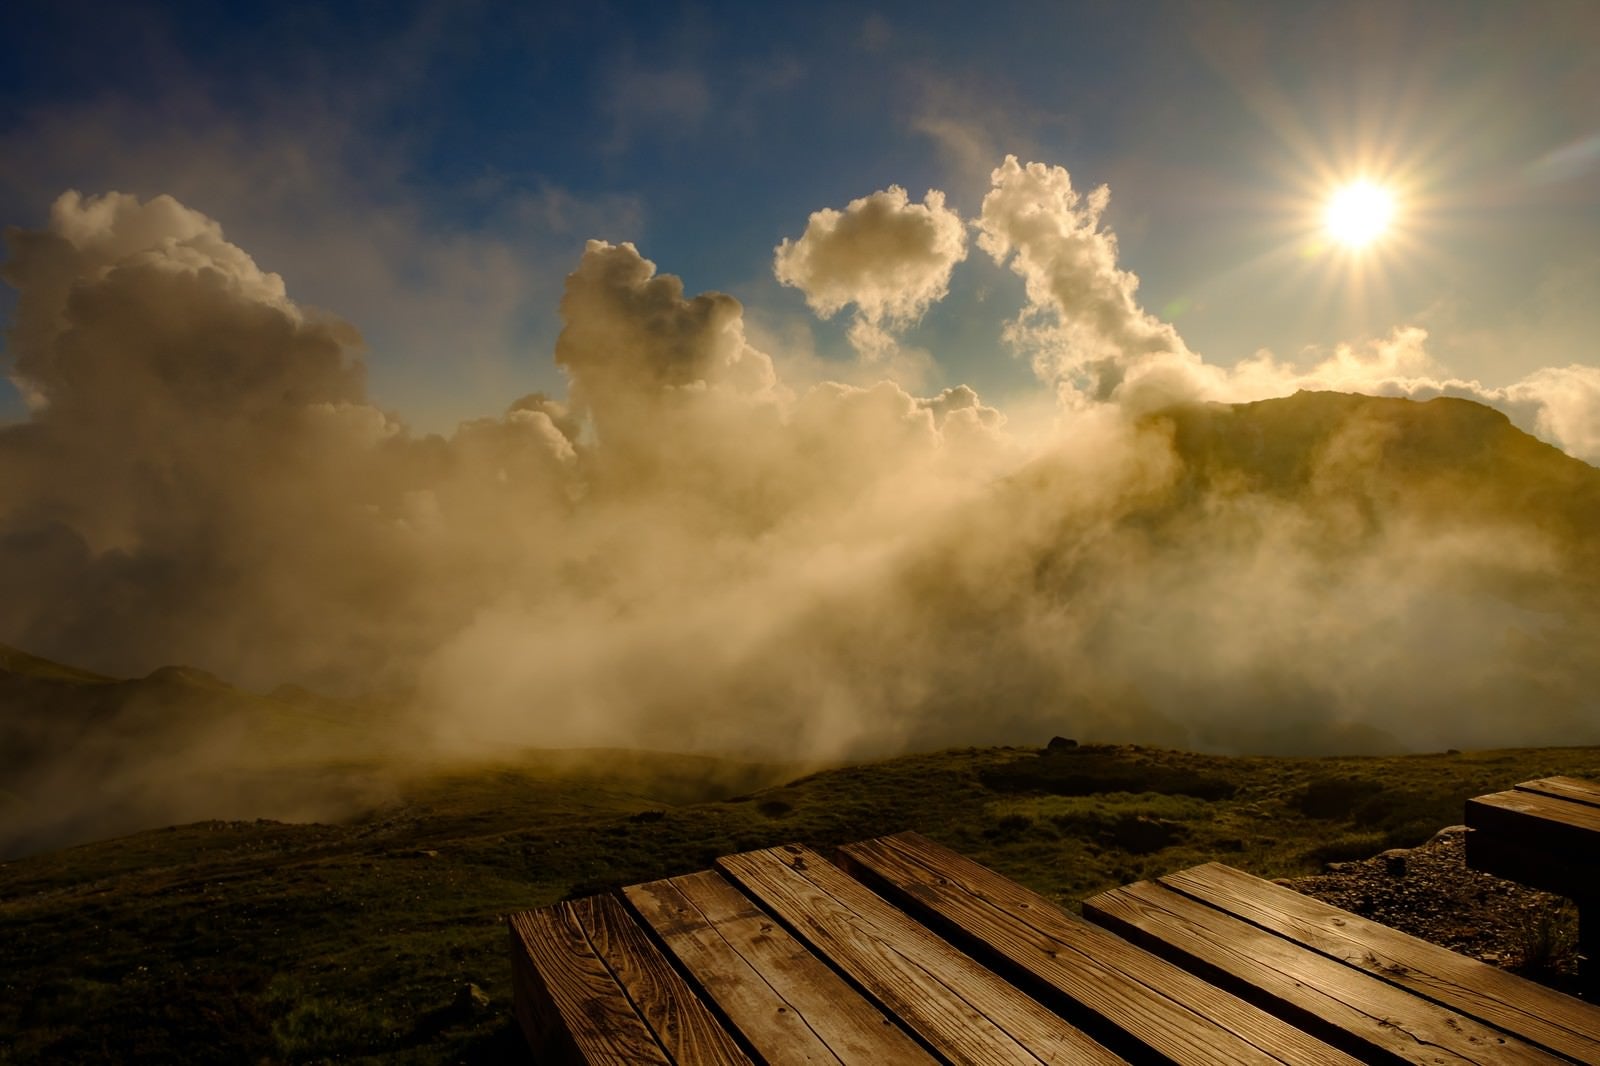 「白馬山荘テラスから望む夕日」の写真